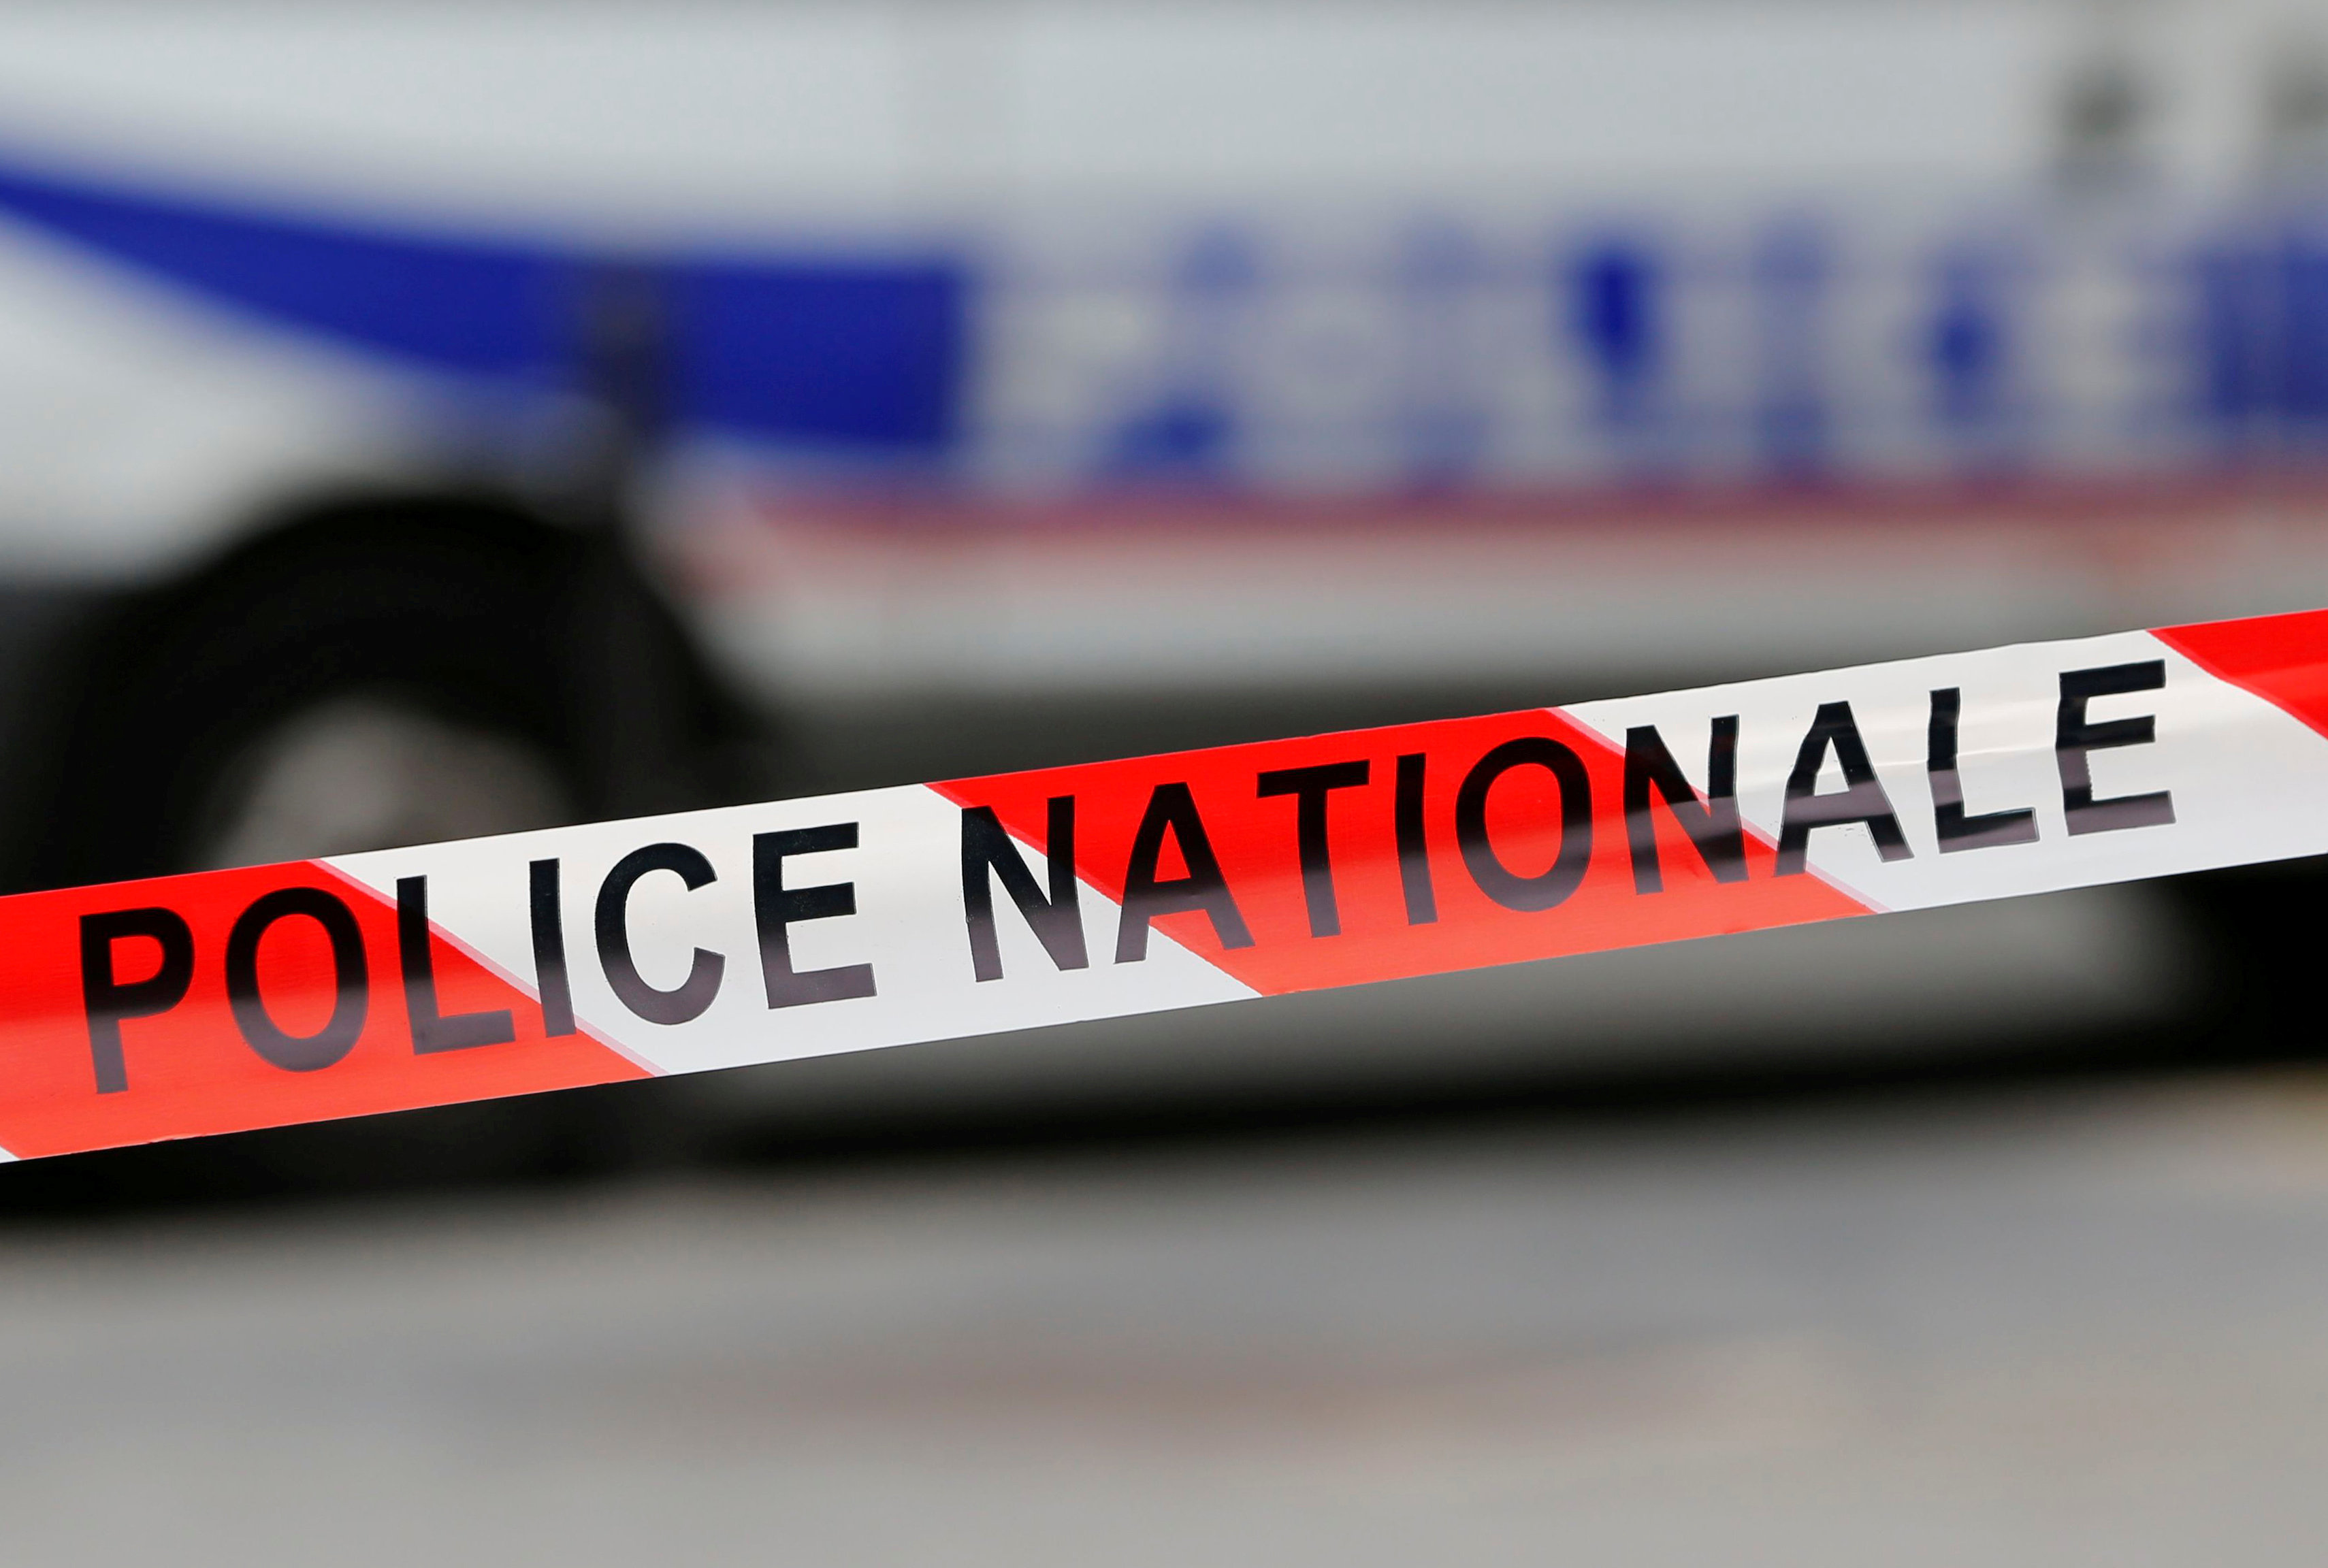 الشريط الأحمر والأبيض الذي تستخدمه الشرطة الوطنية الفرنسية يؤمن منطقة الحادث